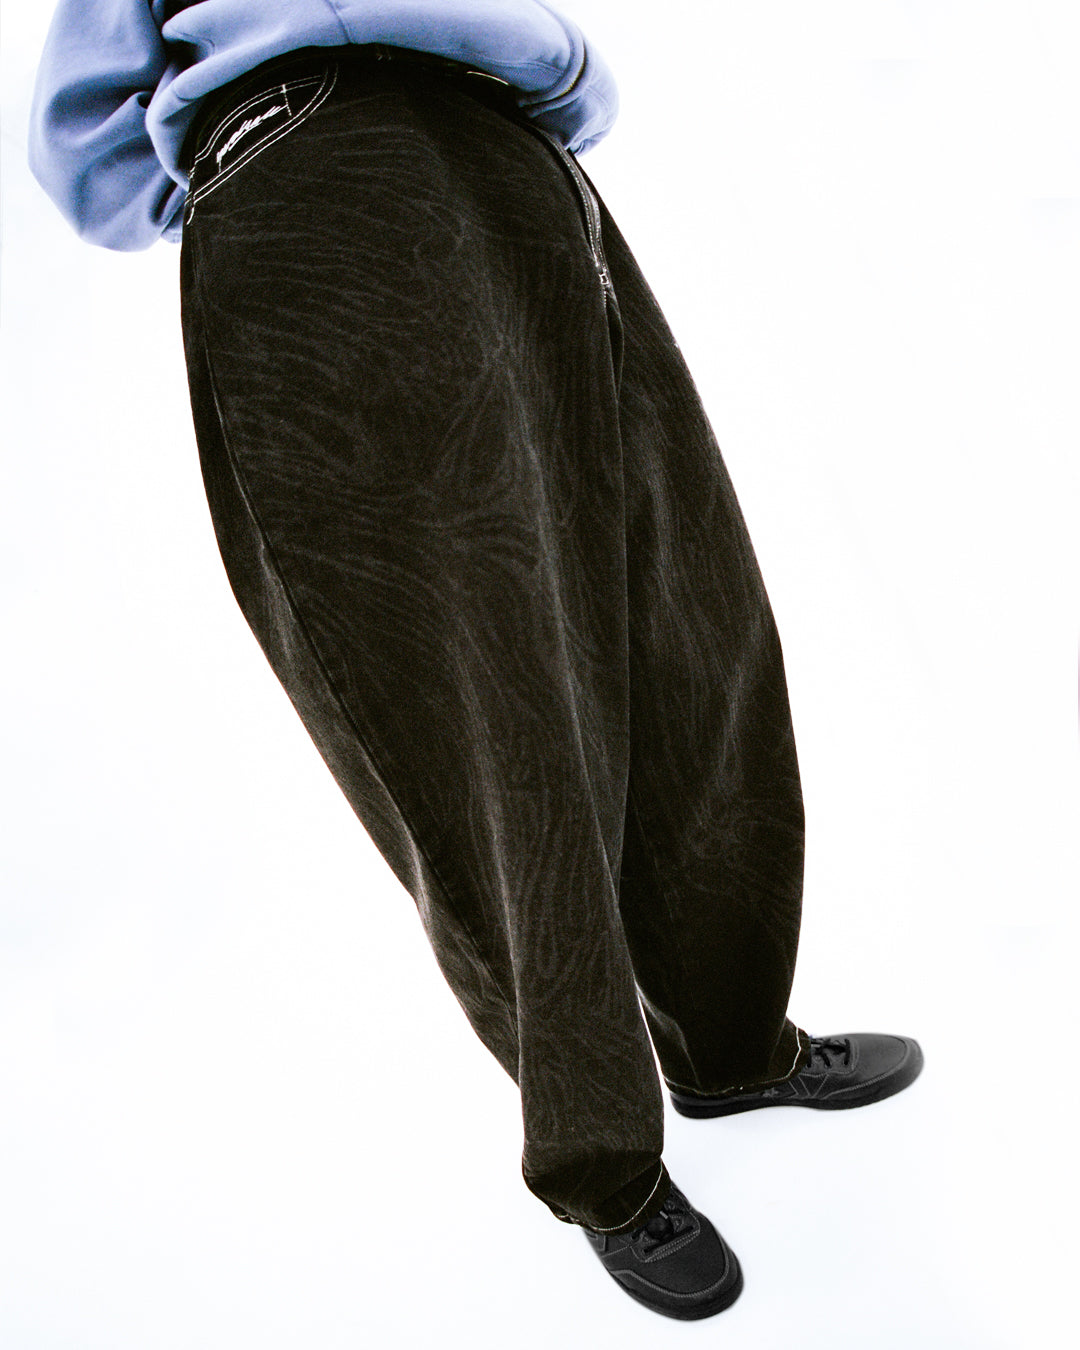 新作【YARDSALE】Ripper Jeans主身長…178cm